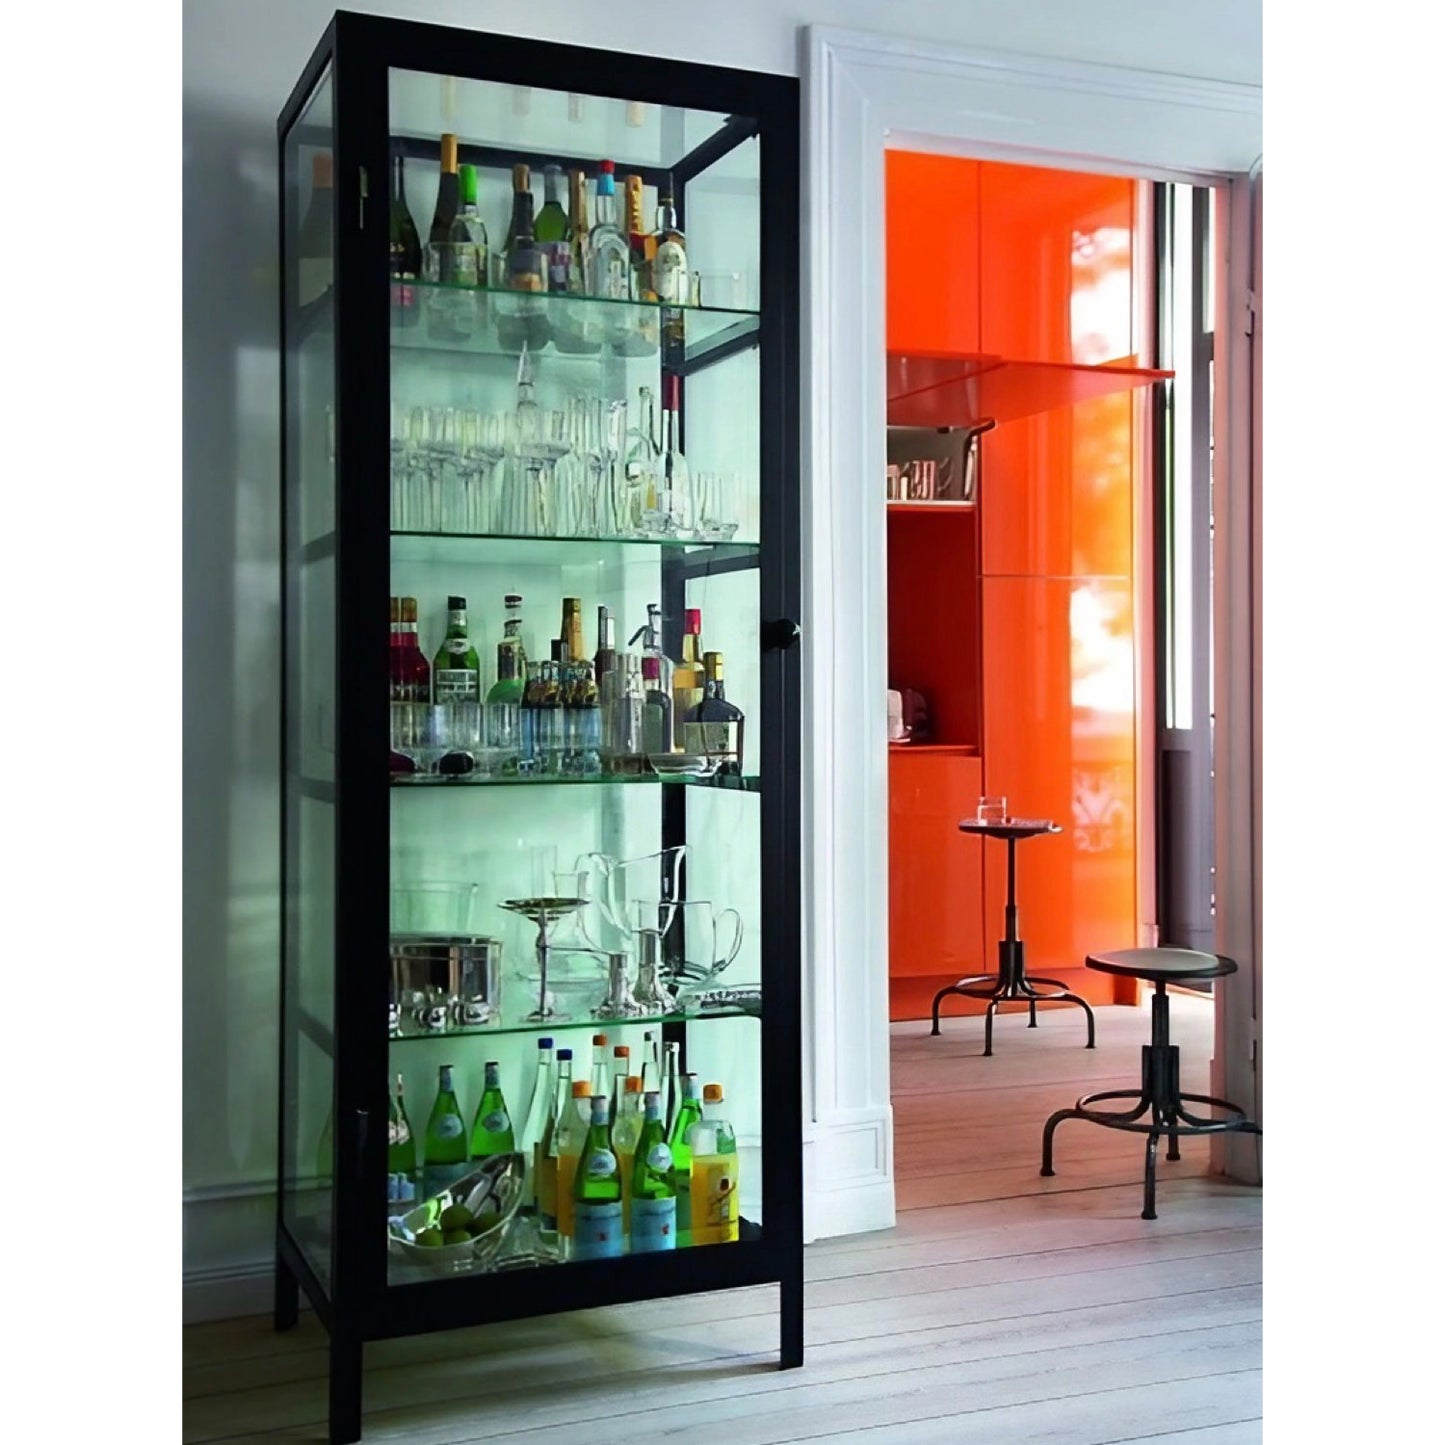 SCHNEEWITTCHEN Glas Cabinet by Lambert